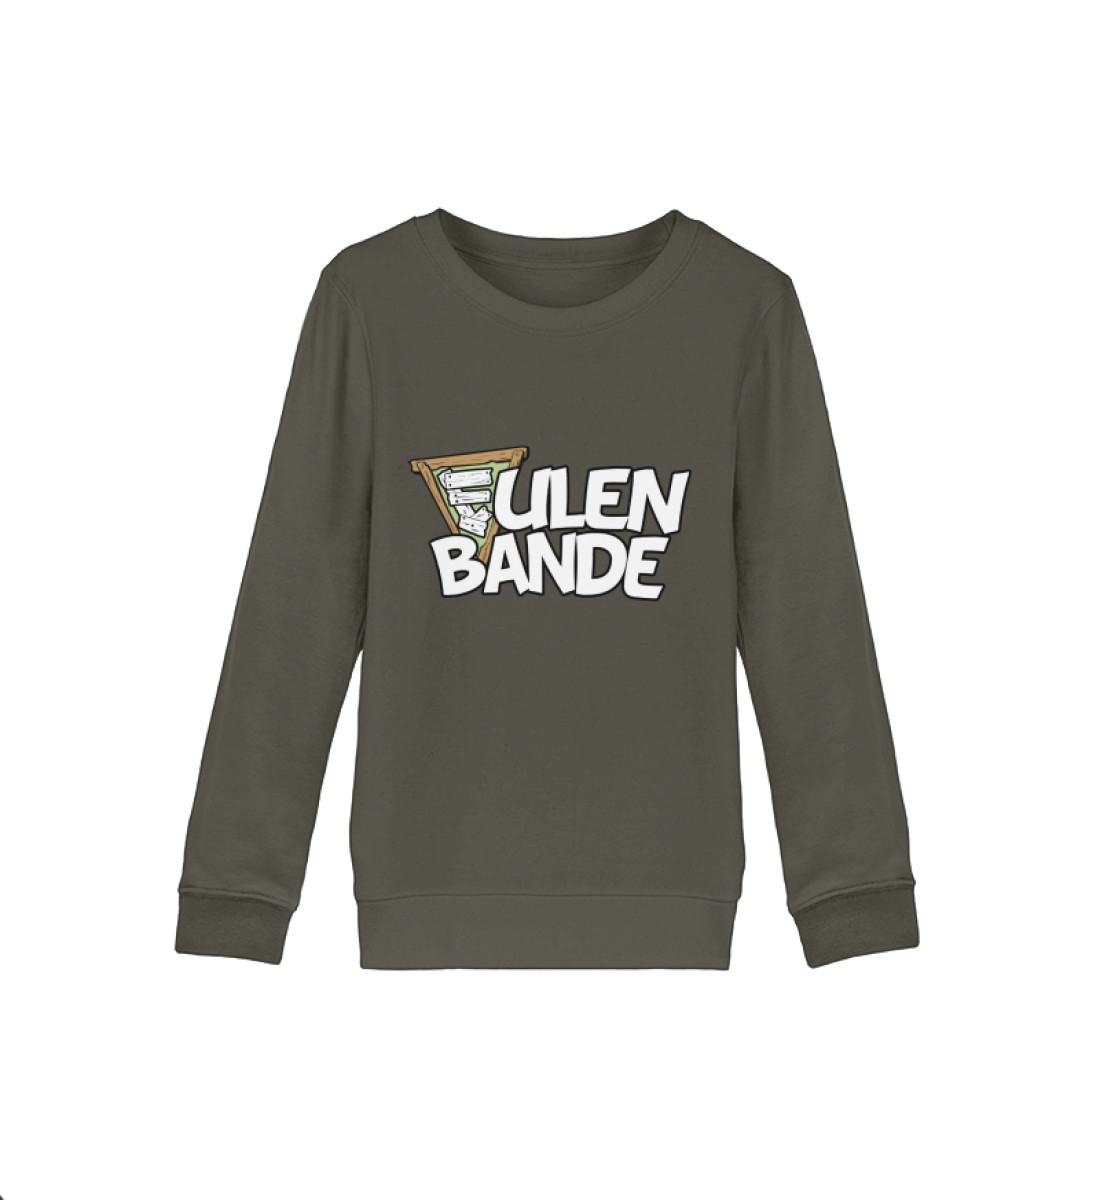 E wie Eulenbande - Organic Kids Sweatshirt ST/ST-7151